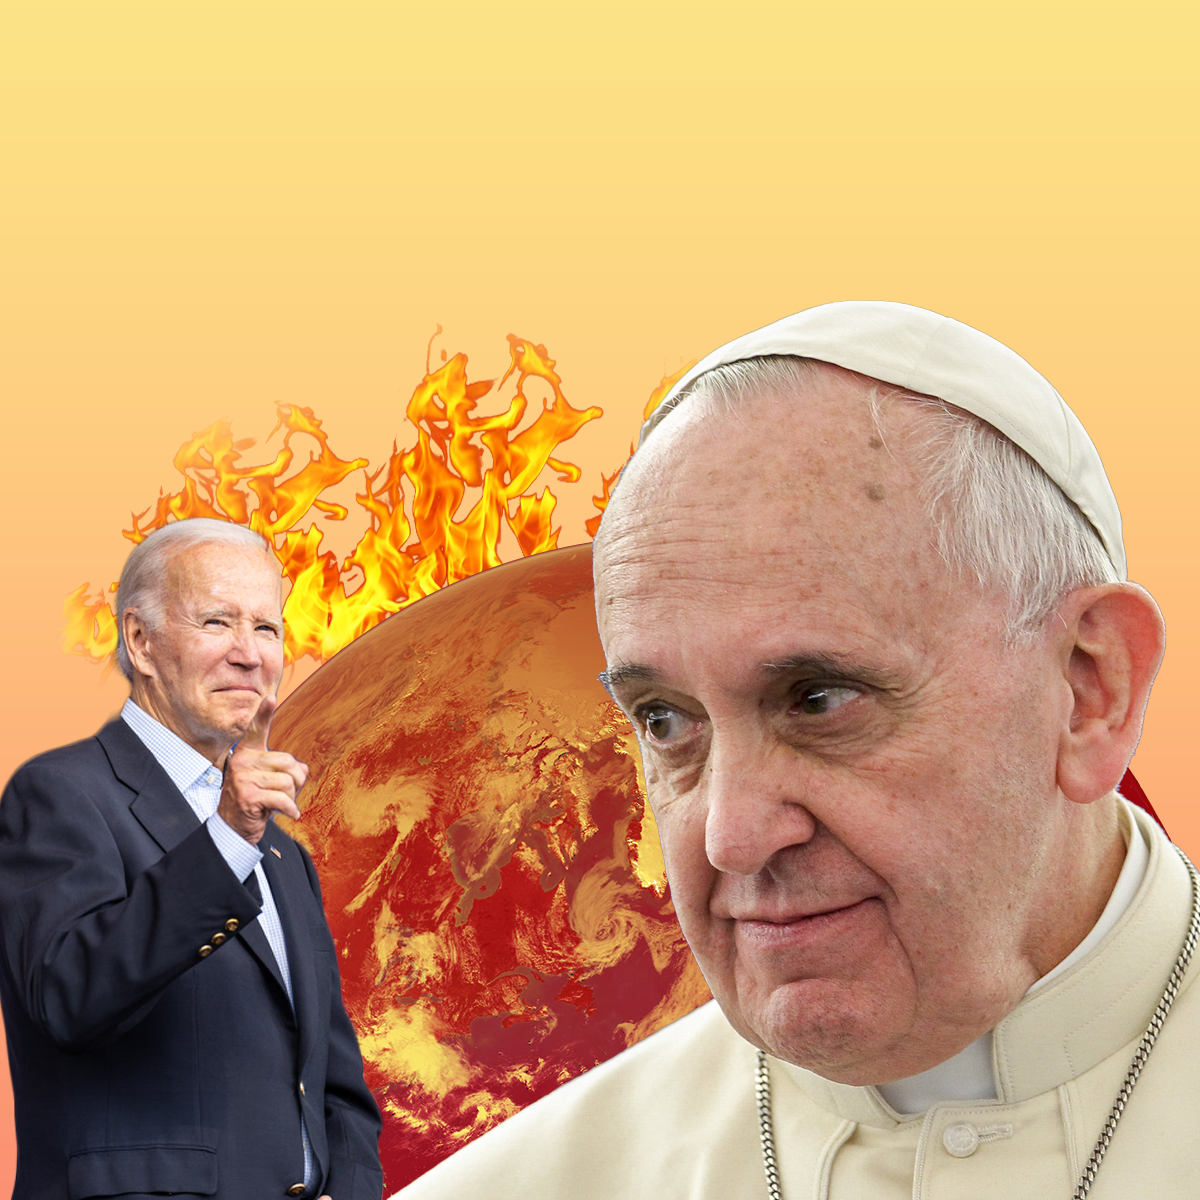 Pope Francis Joe Biden fire earth meme